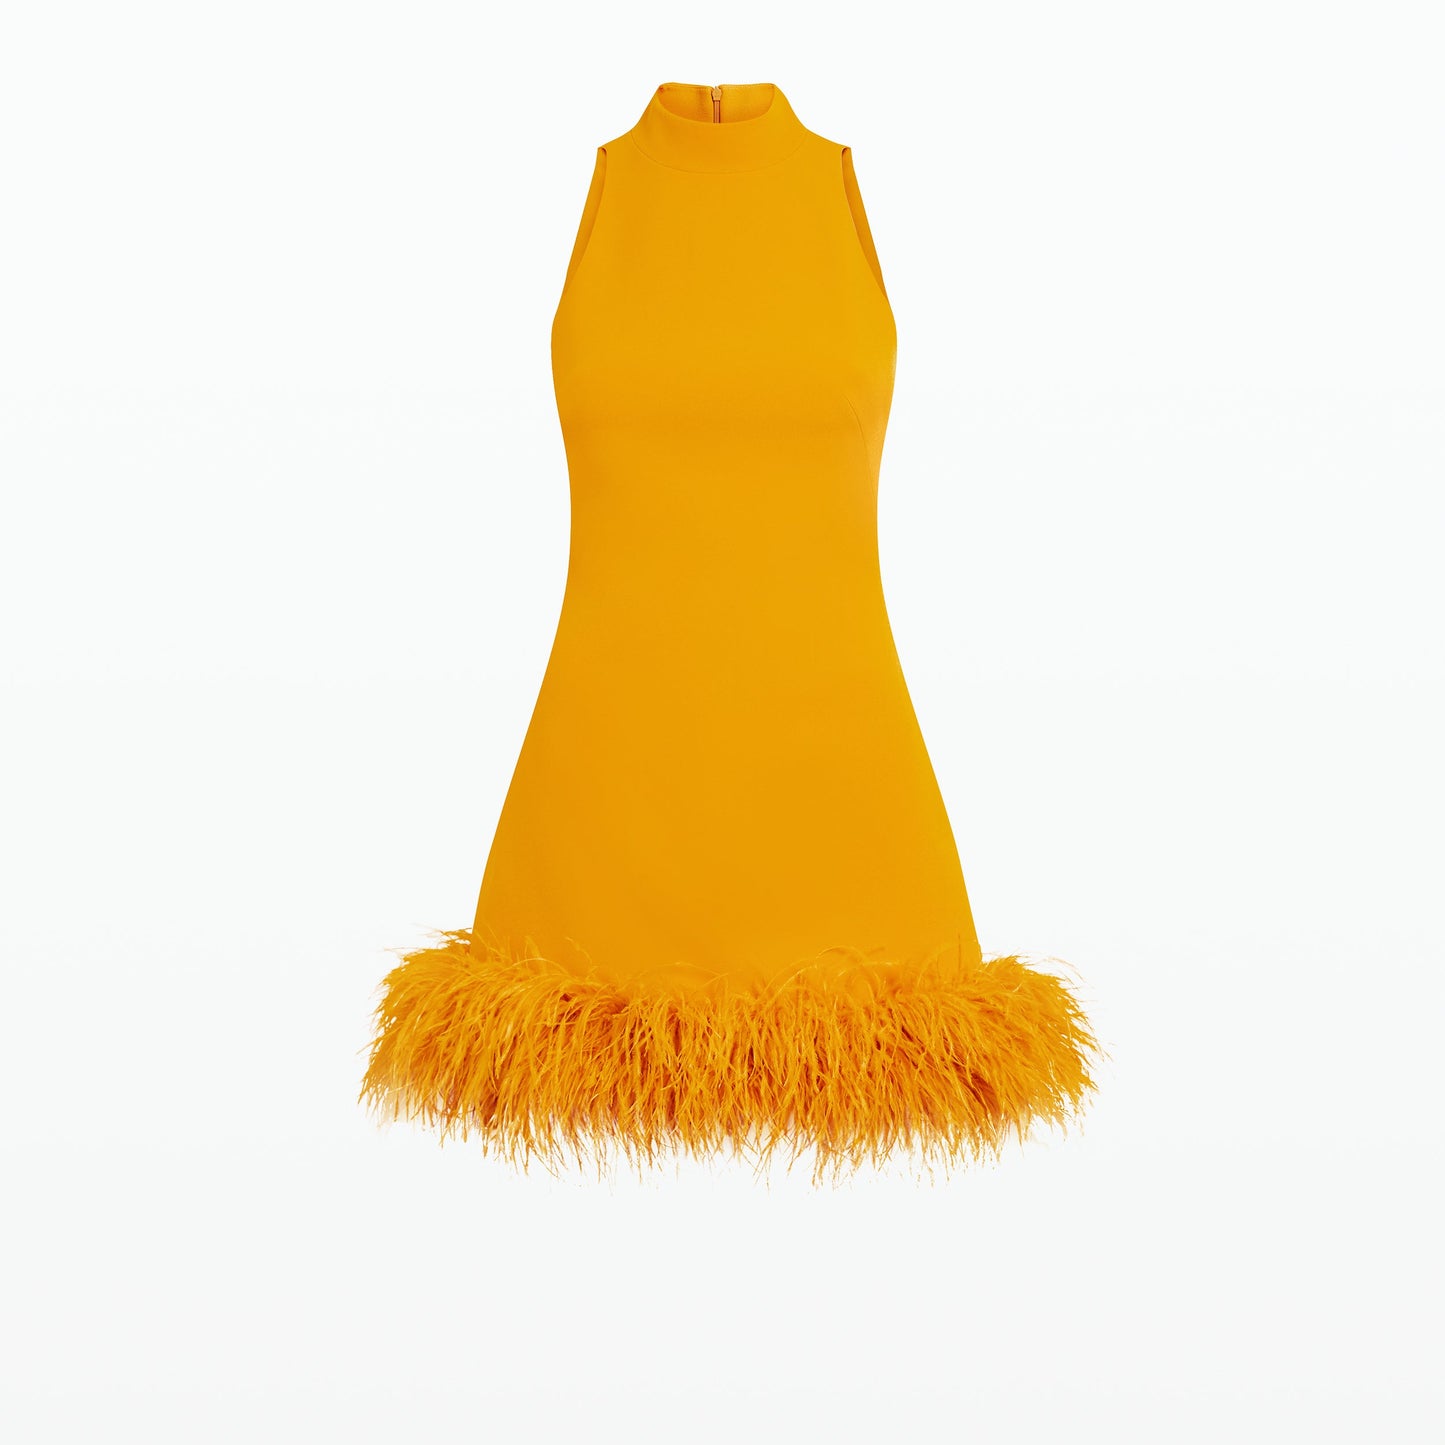 Ratana Ochre Feather-Trimmed Short Dress